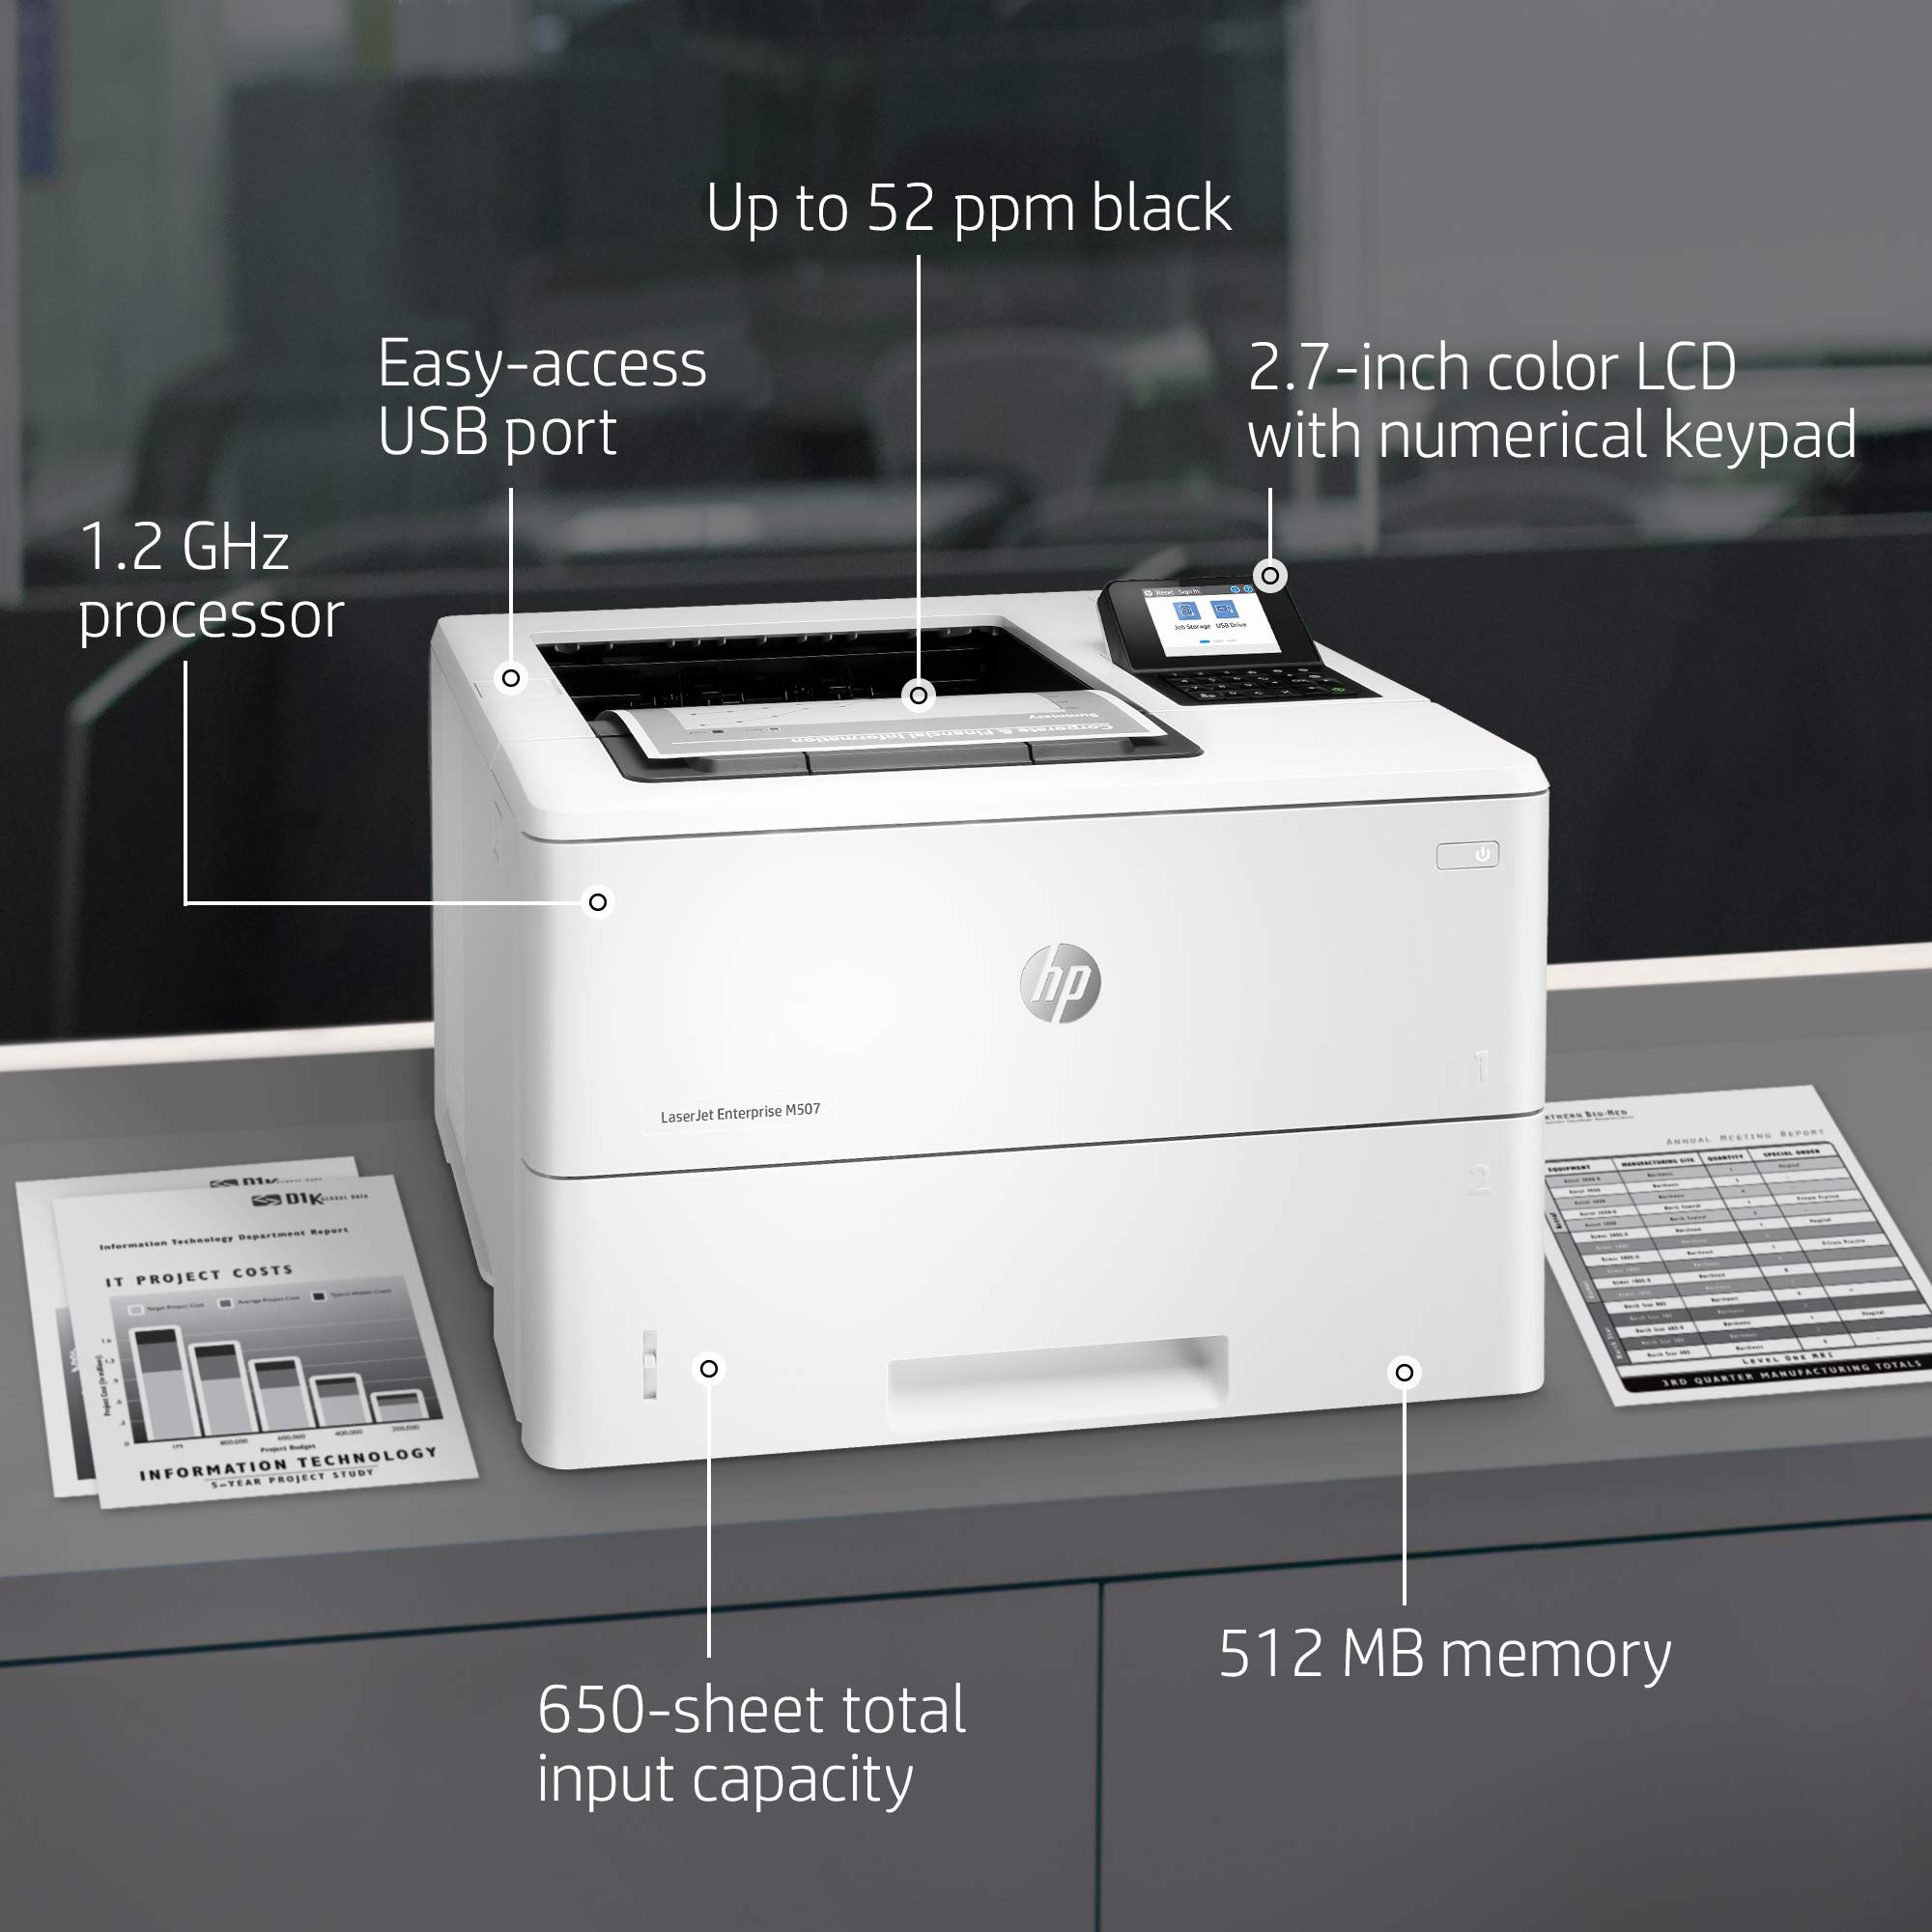 HP LaserJet Enterprise M507n Monochrome Printer with built-in Ethernet (1PV86A), White